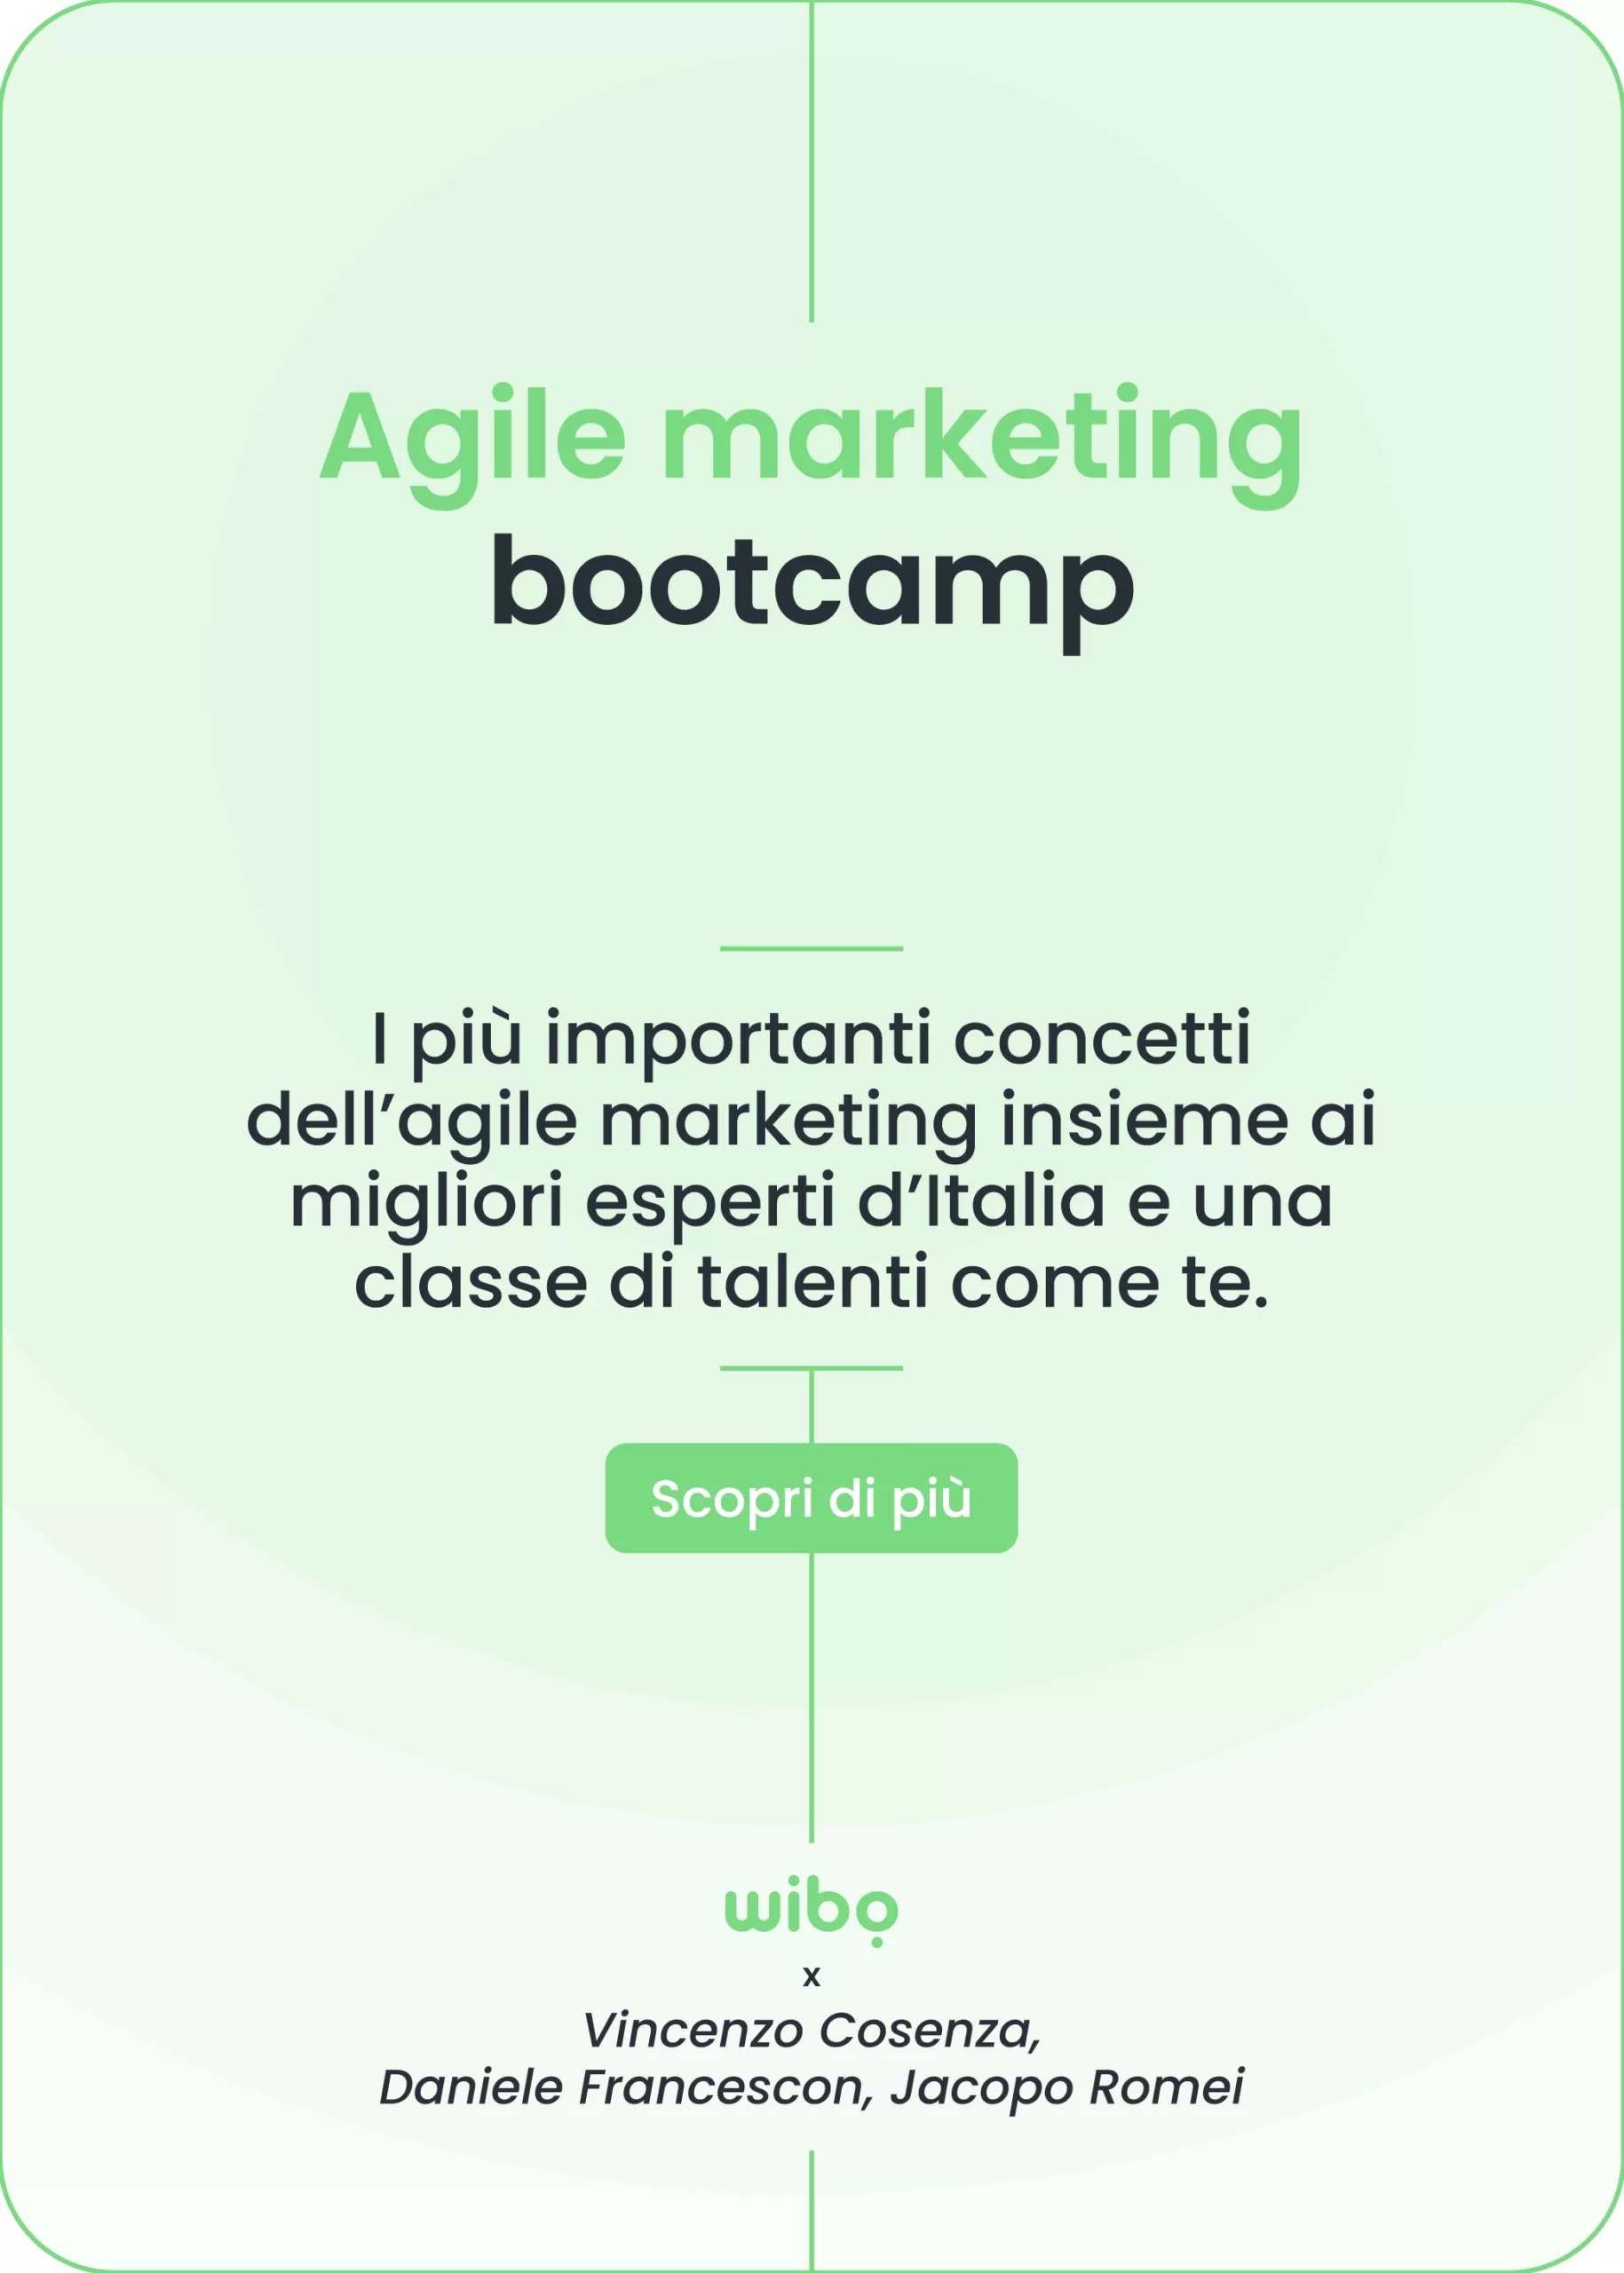 Agile Marketing Bootcamp: Percorso di formazione aziendale in collaborazione con Vincenzo Cosenza, Daniele Francescon, Jacopo Romei.